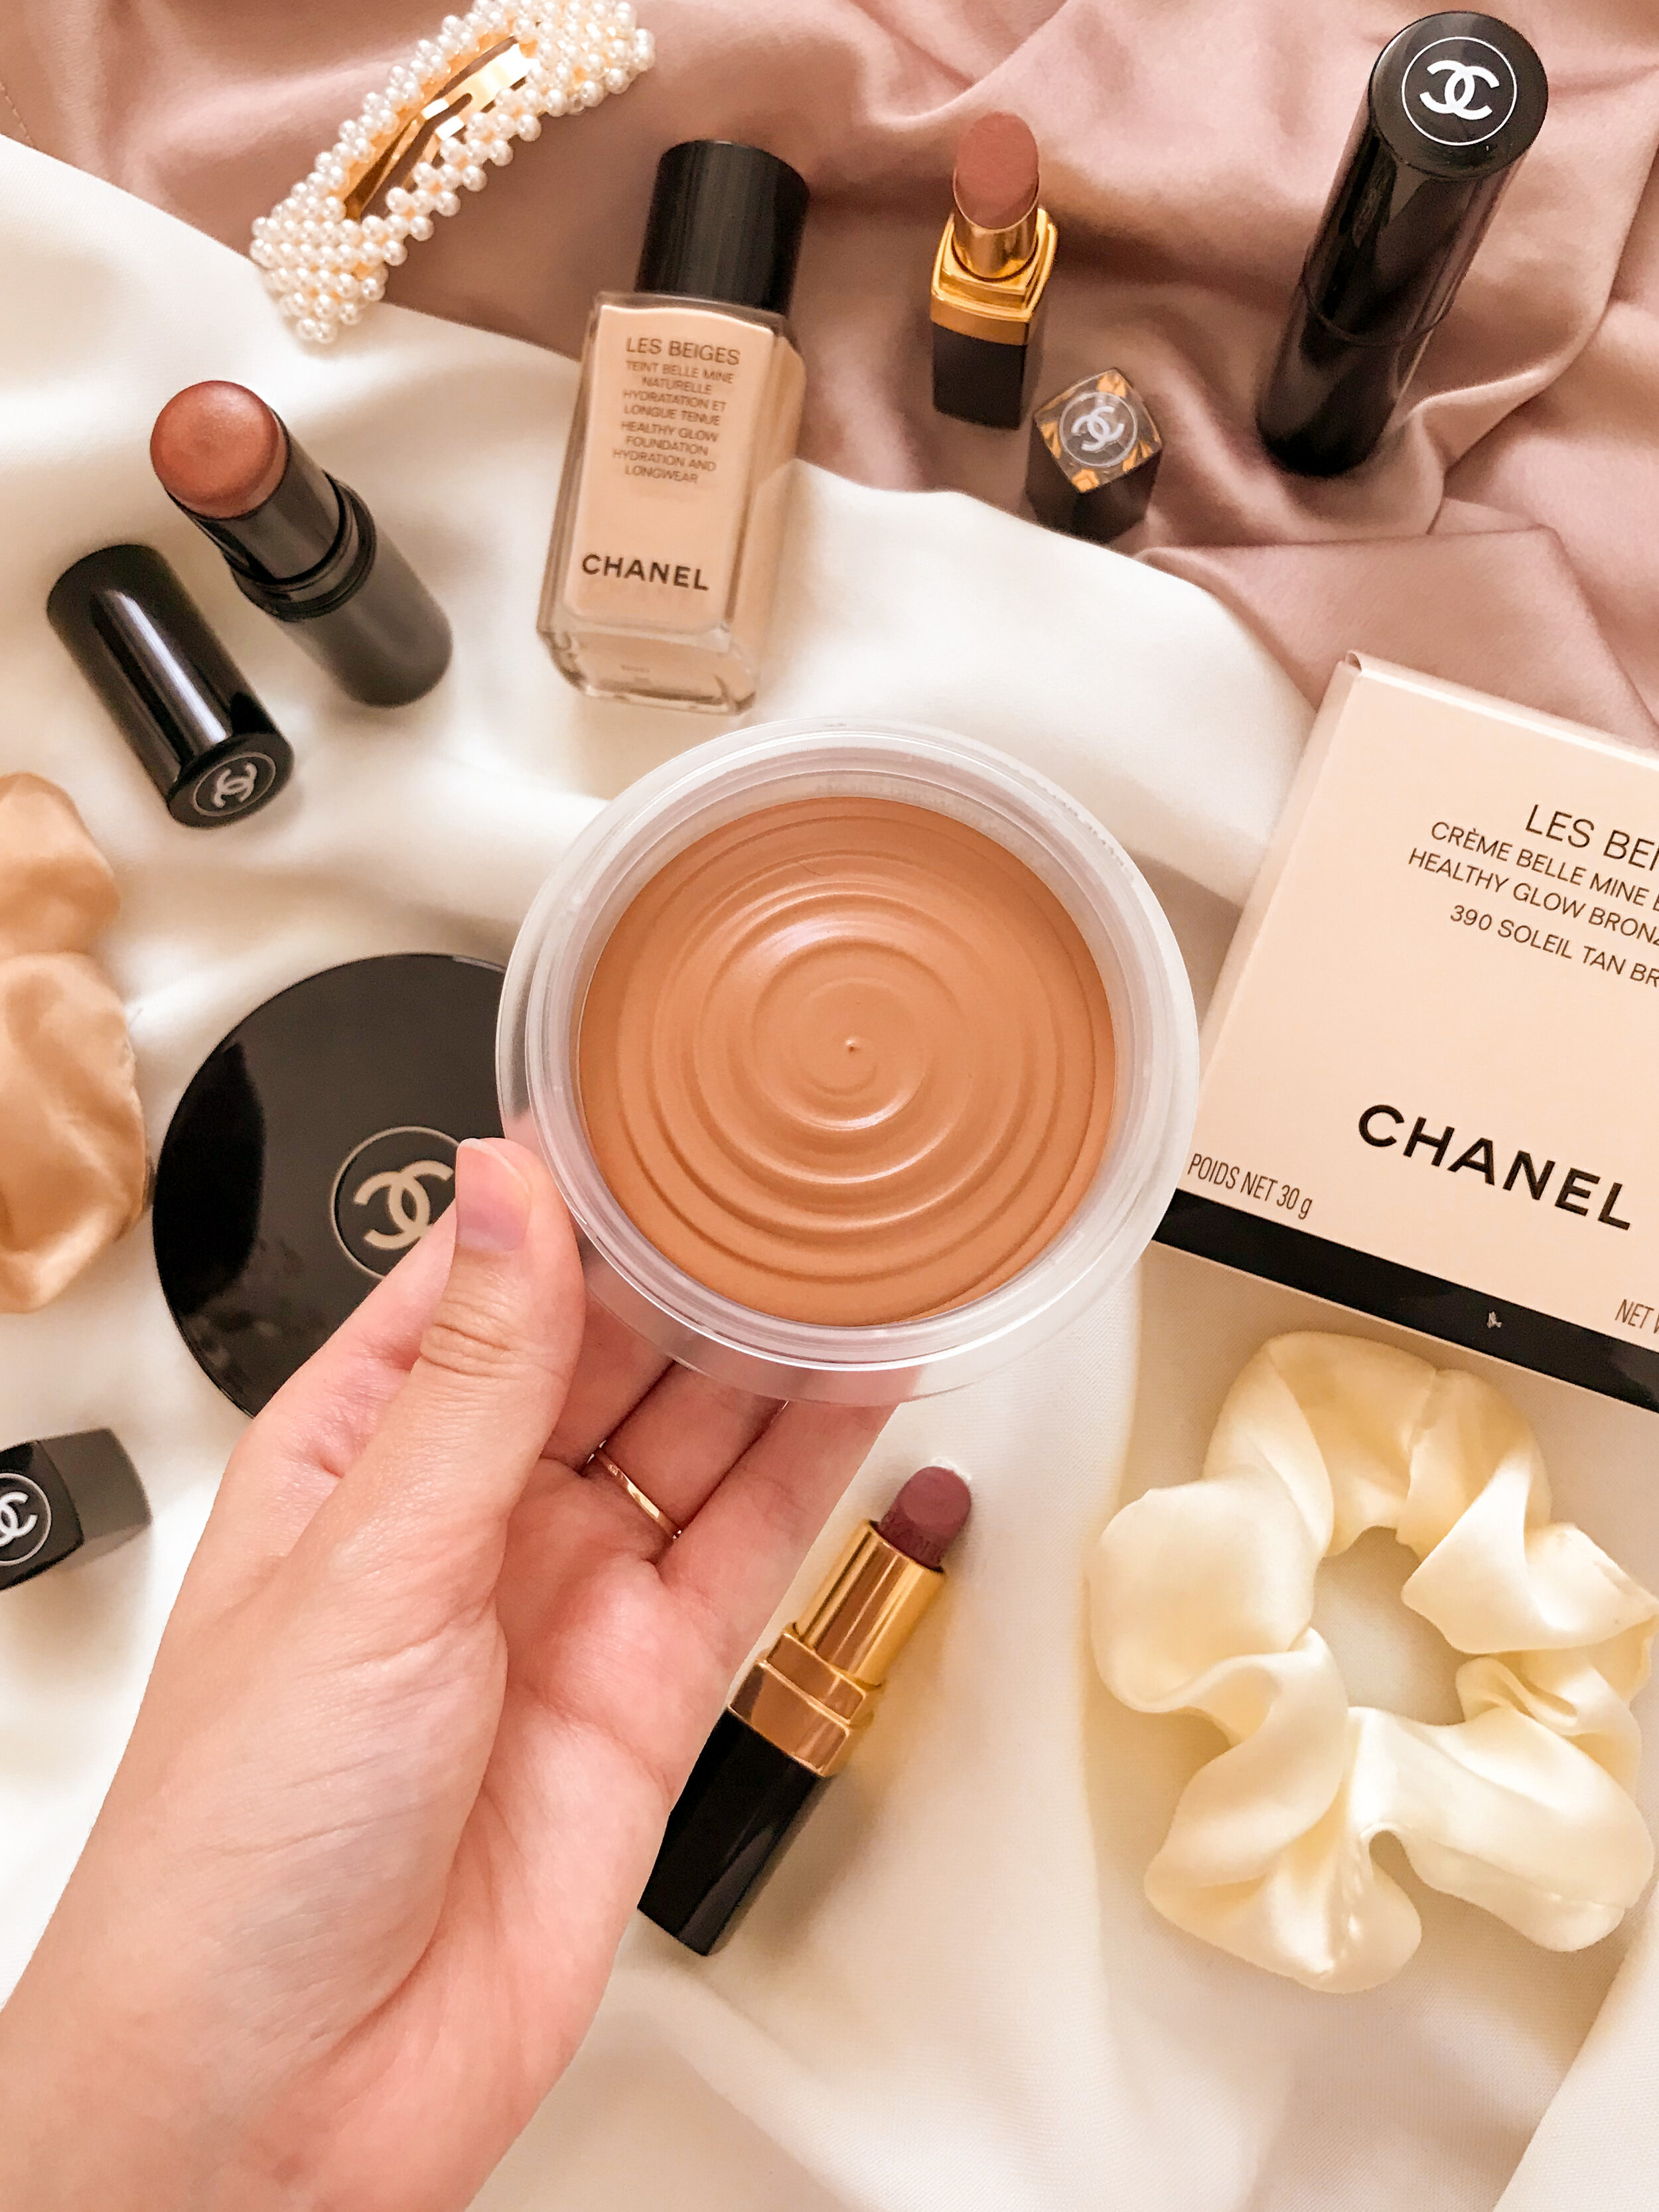 Chanel Les Beiges Crème Belle Mine Ensoleillée, mon avis ! — Pauuulette -  Blog Makeup